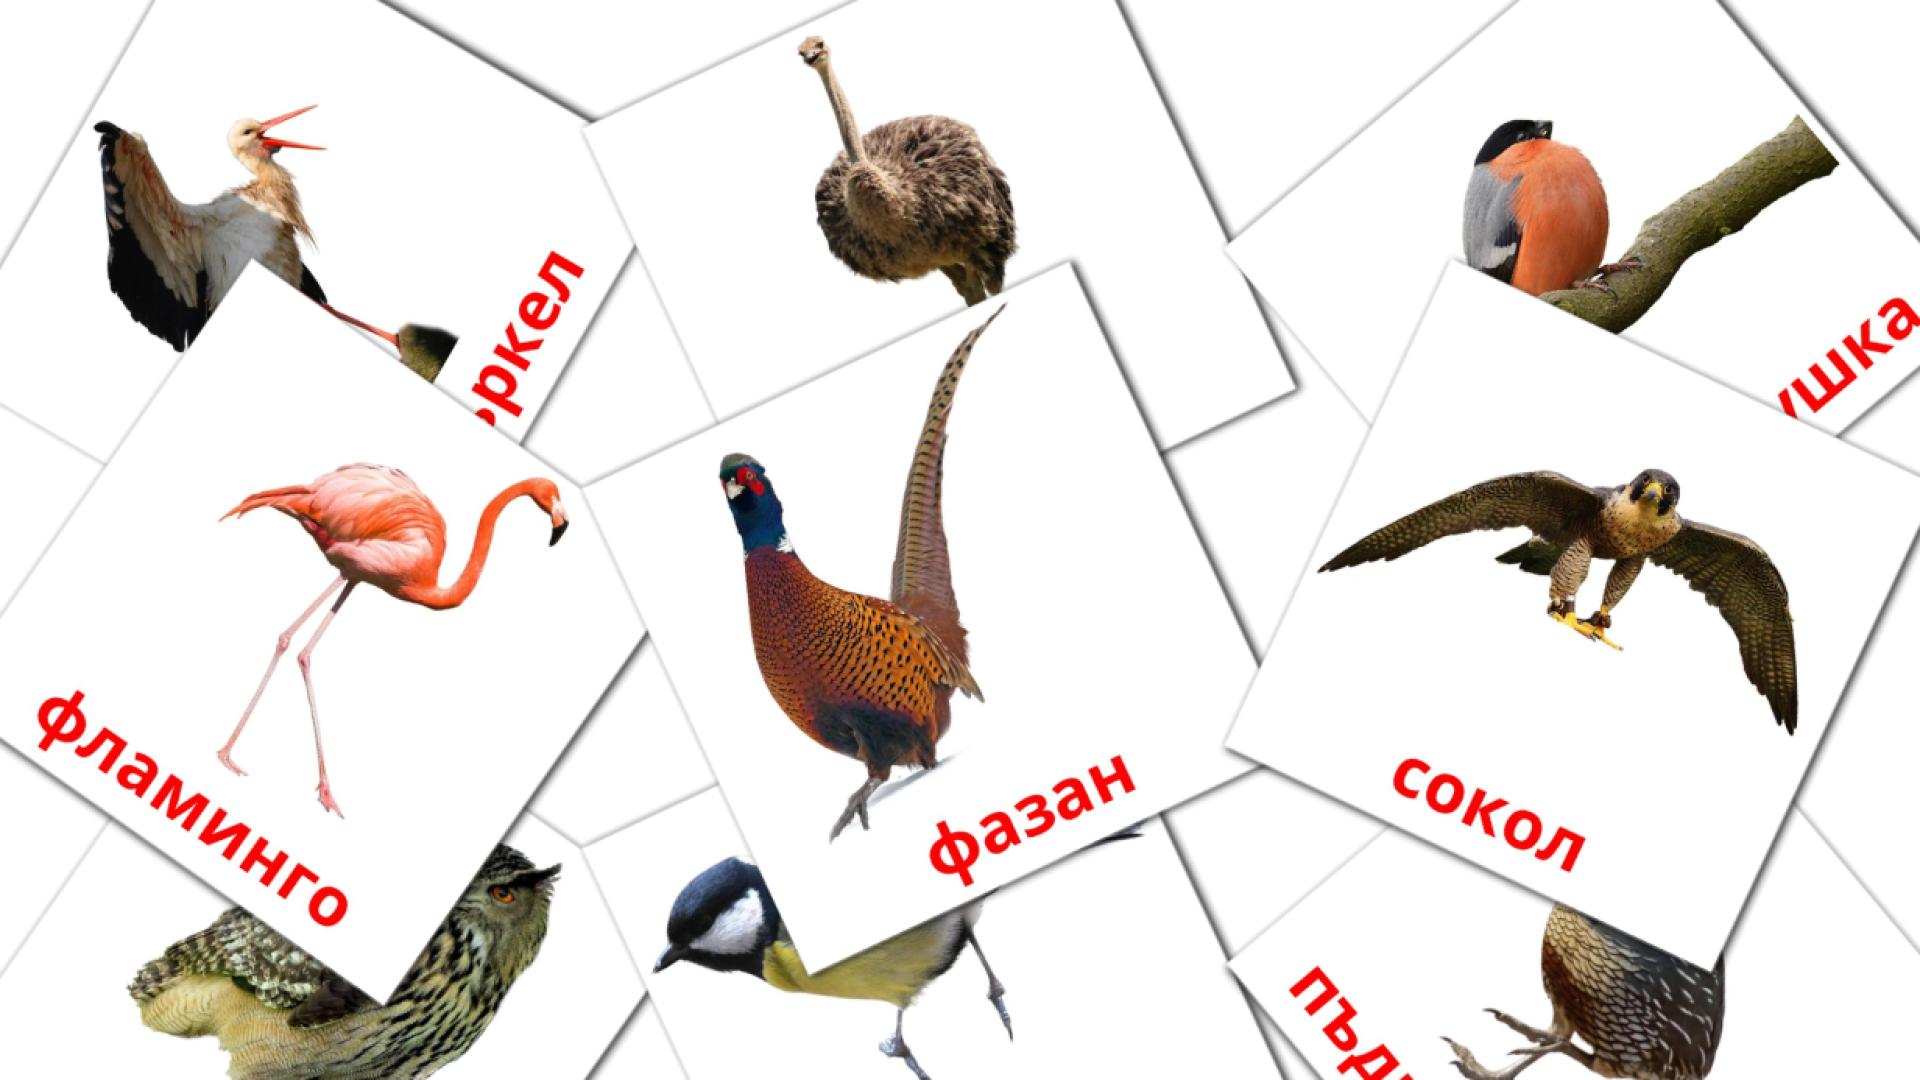 Bulgarisch Птициe Vokabelkarteikarten